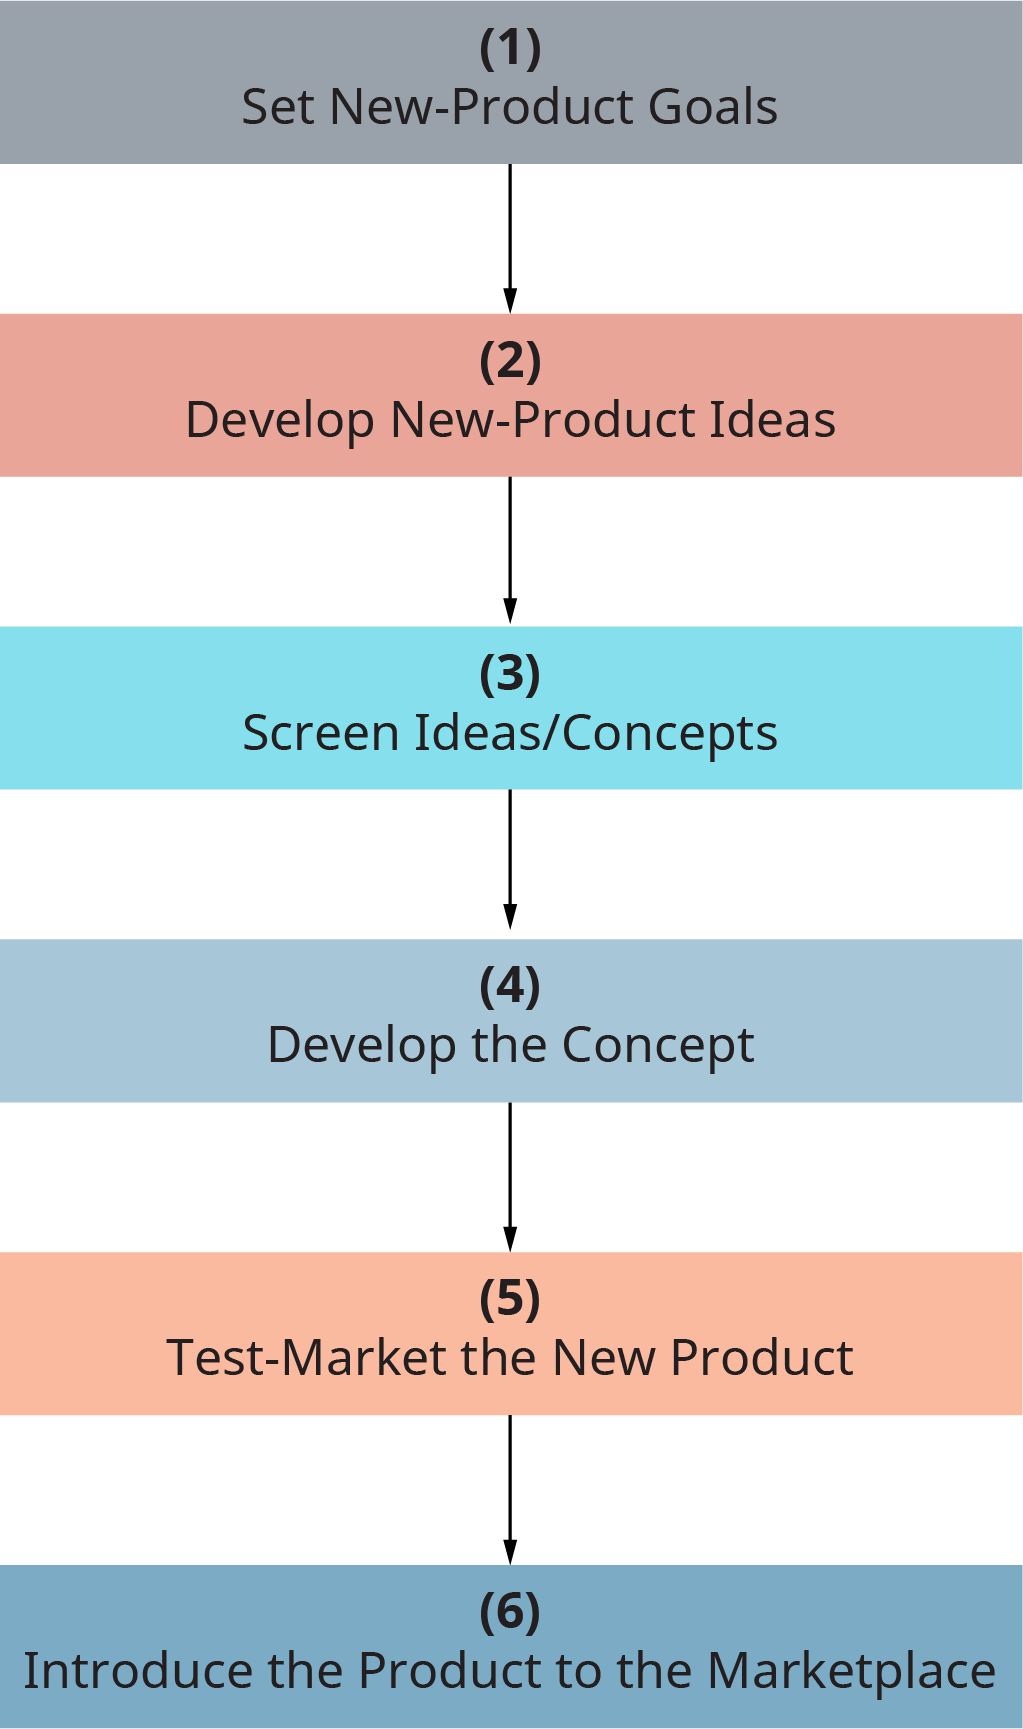 كل خطوة تتدفق إلى الخطوة التالية. الخطوة 1، حدد أهداف المنتج الجديدة. الخطوة 2، تطوير أفكار منتجات جديدة. الخطوة 3، أفكار الشاشة تقلل المفاهيم. الخطوة 4، تطوير المفهوم. الخطوة 5، اختبار تسويق المنتج الجديد. الخطوة 6، تقديم المنتج إلى السوق.